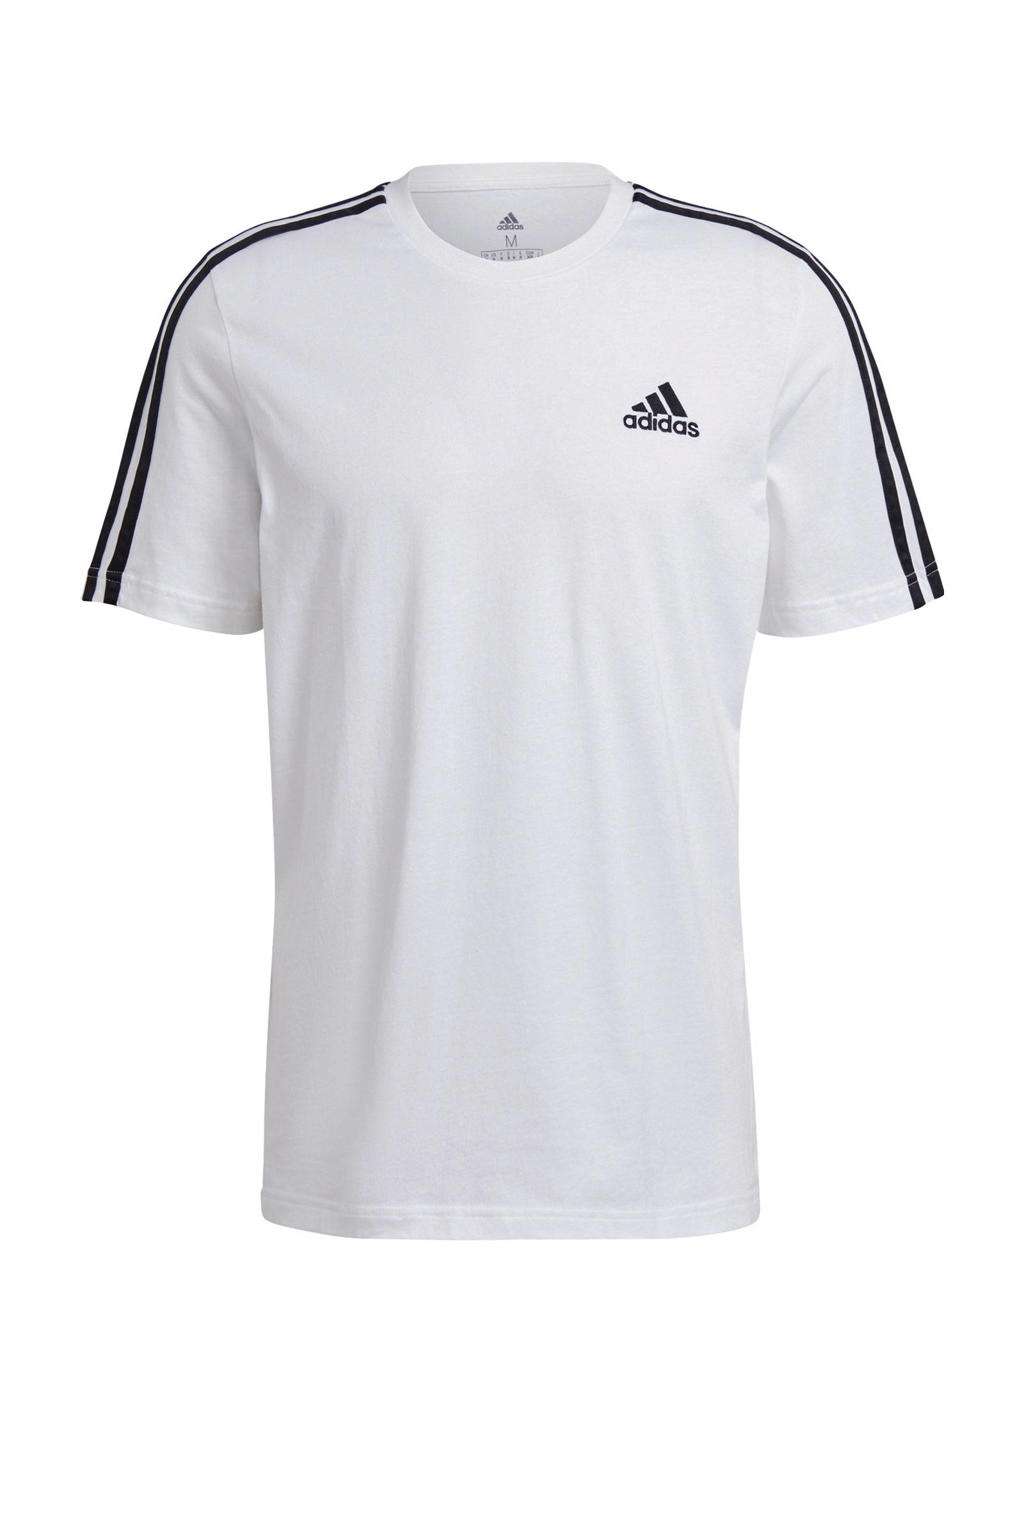 adidas Performance   sport T-shirt wit/zwart